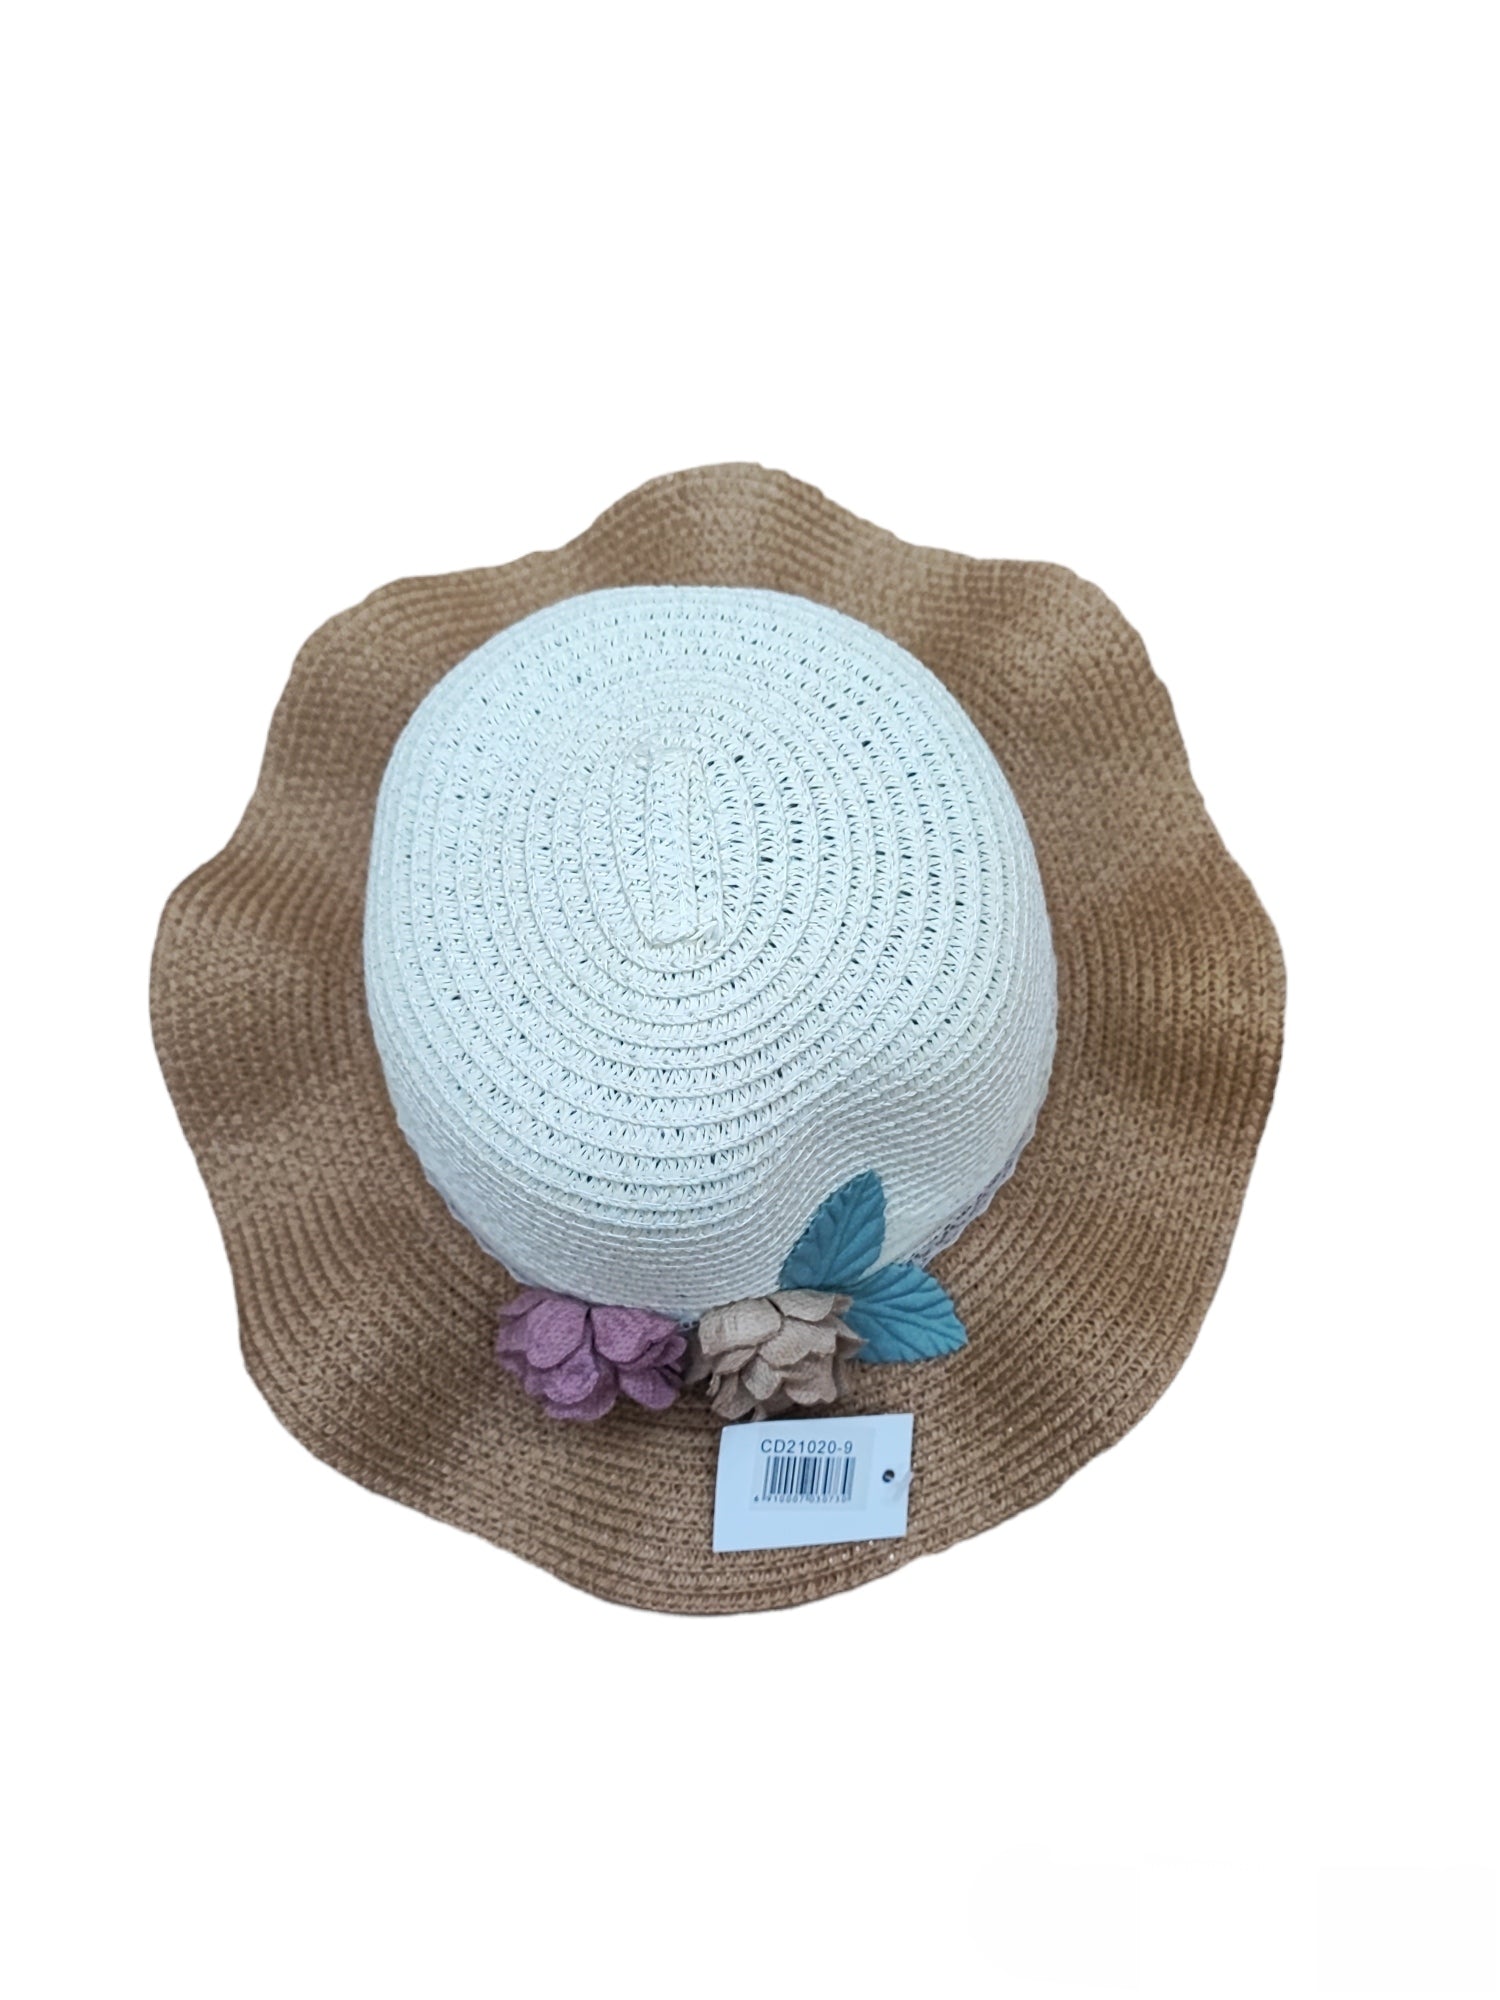 Chapeaux de paille taille enfant motif  fleur   (x12)